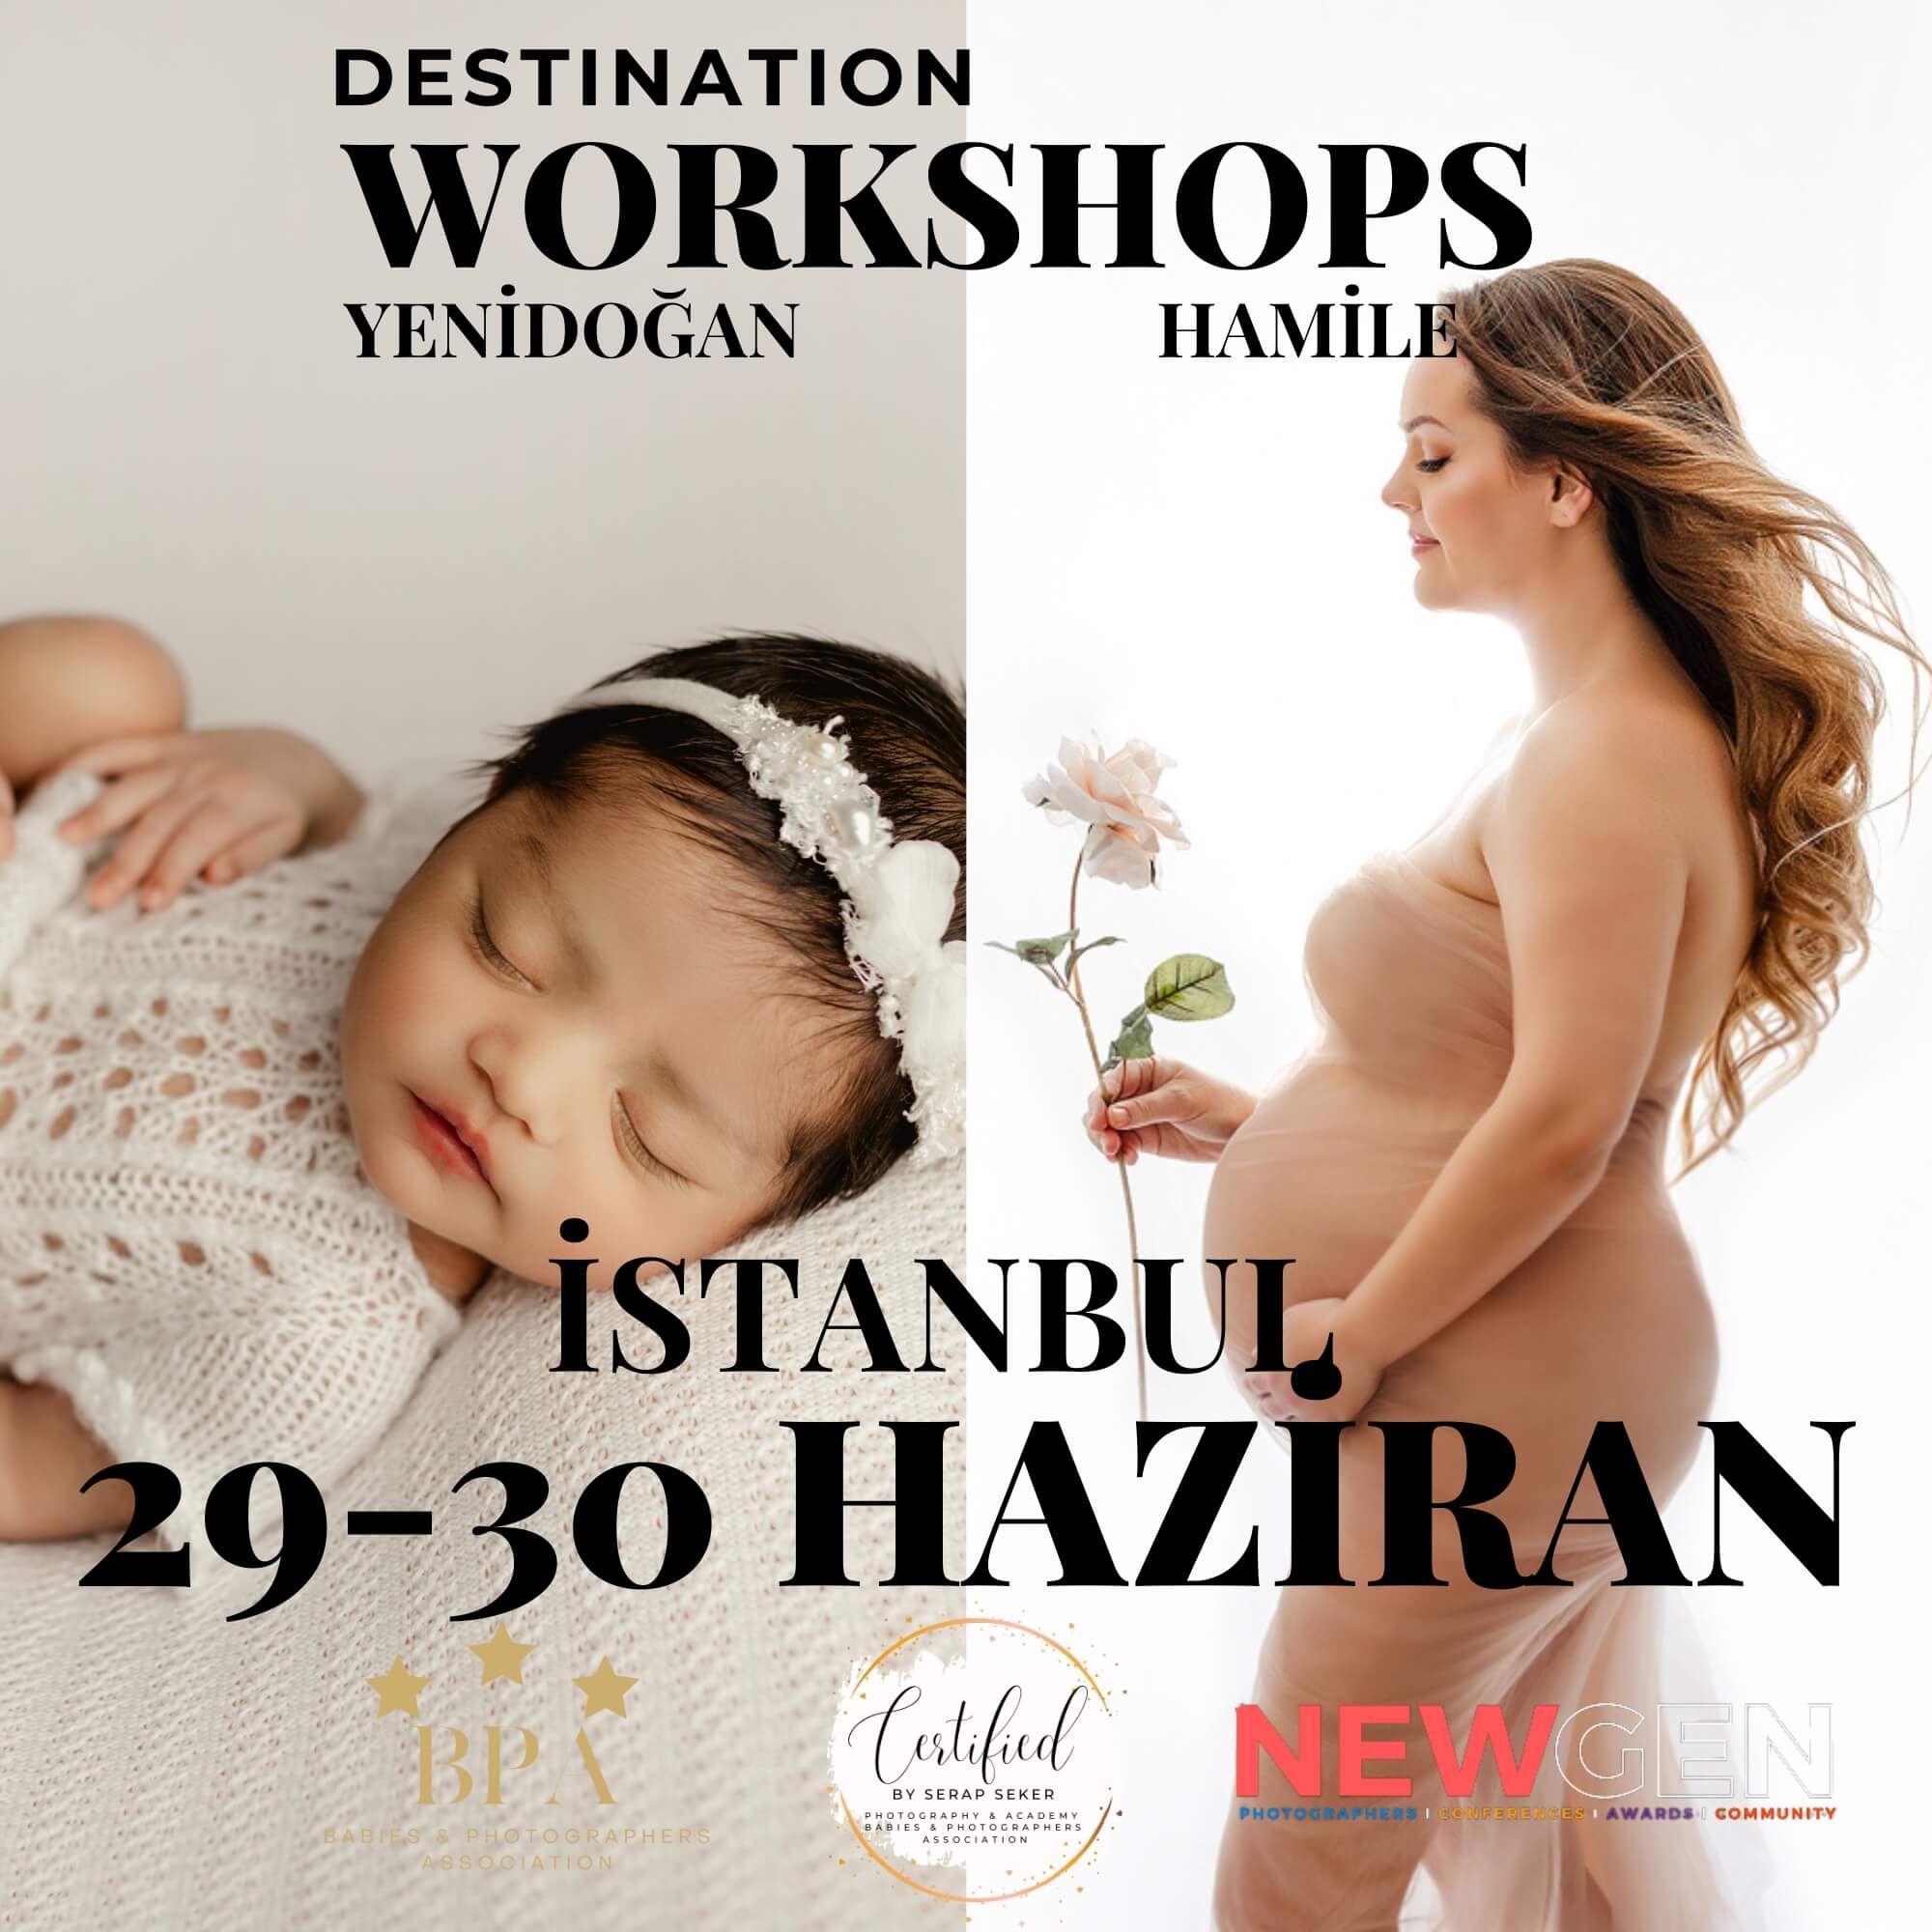 İstanbul Yenidoğan / Hamile Workshop